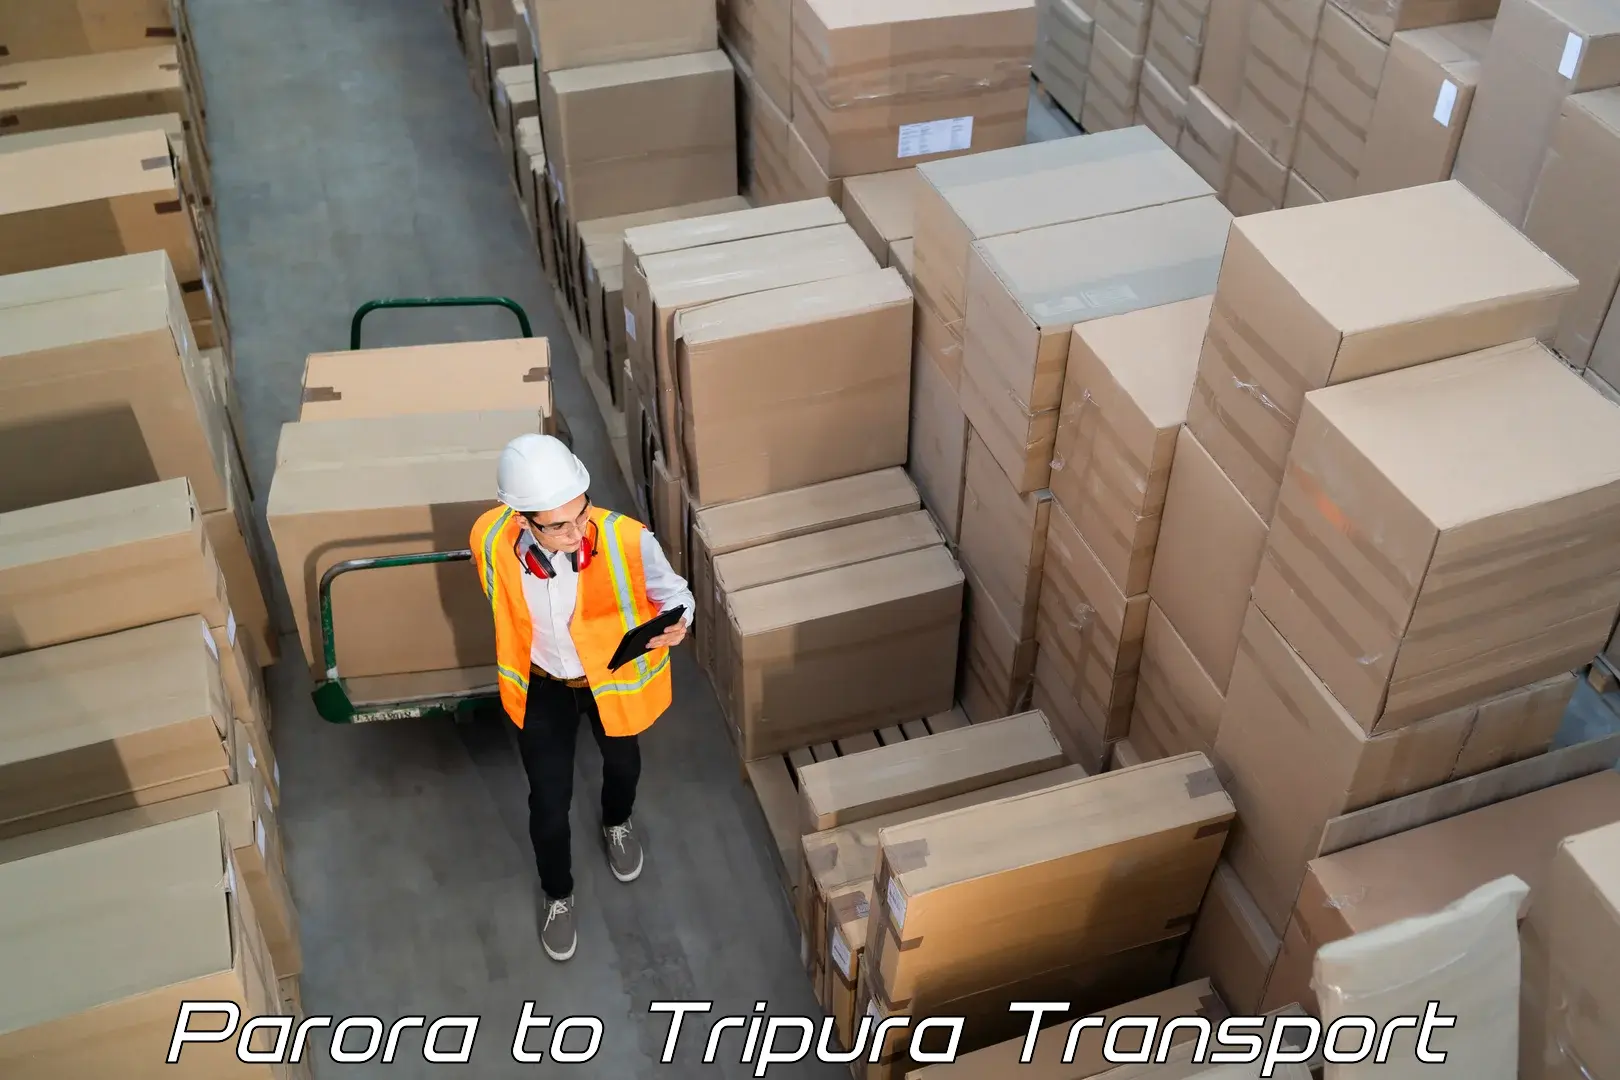 Container transport service Parora to Amarpur